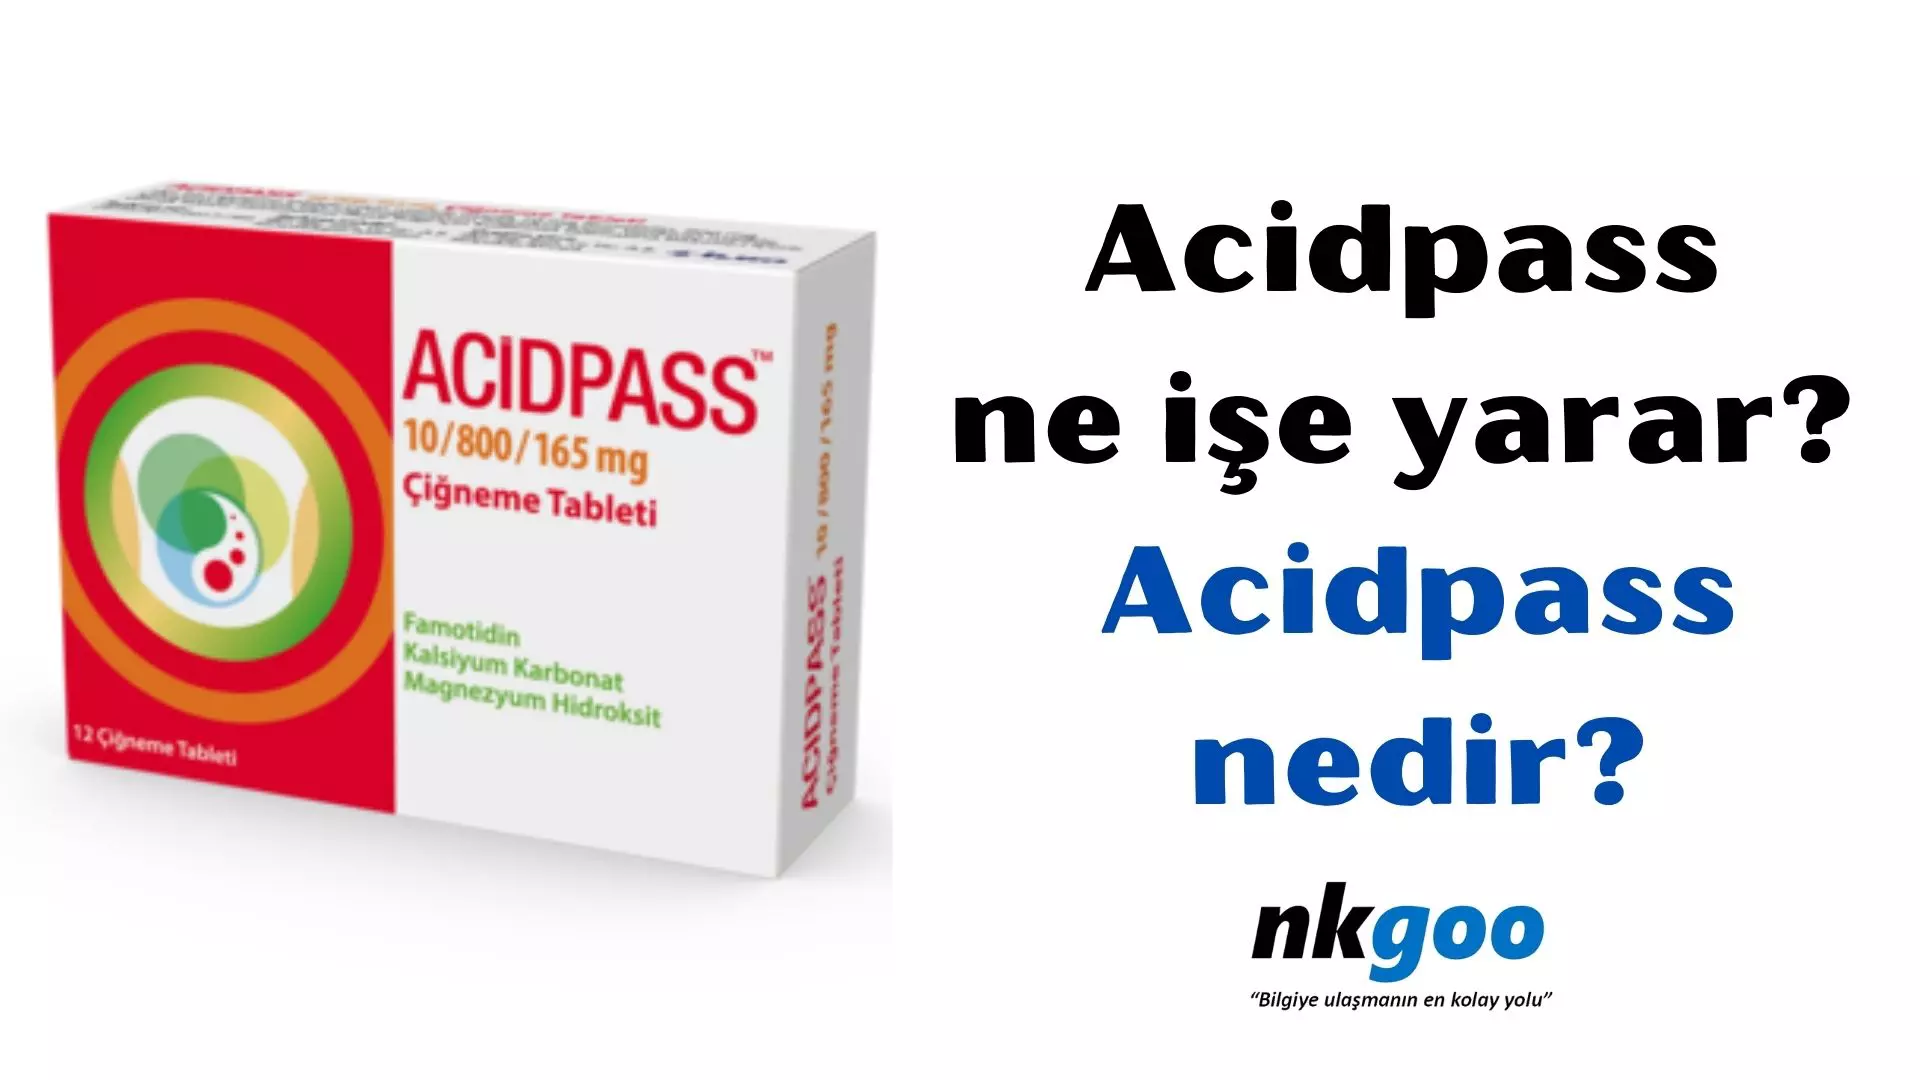 Acidpass ne işe yarar? Acidpass nedir? Kullanımı